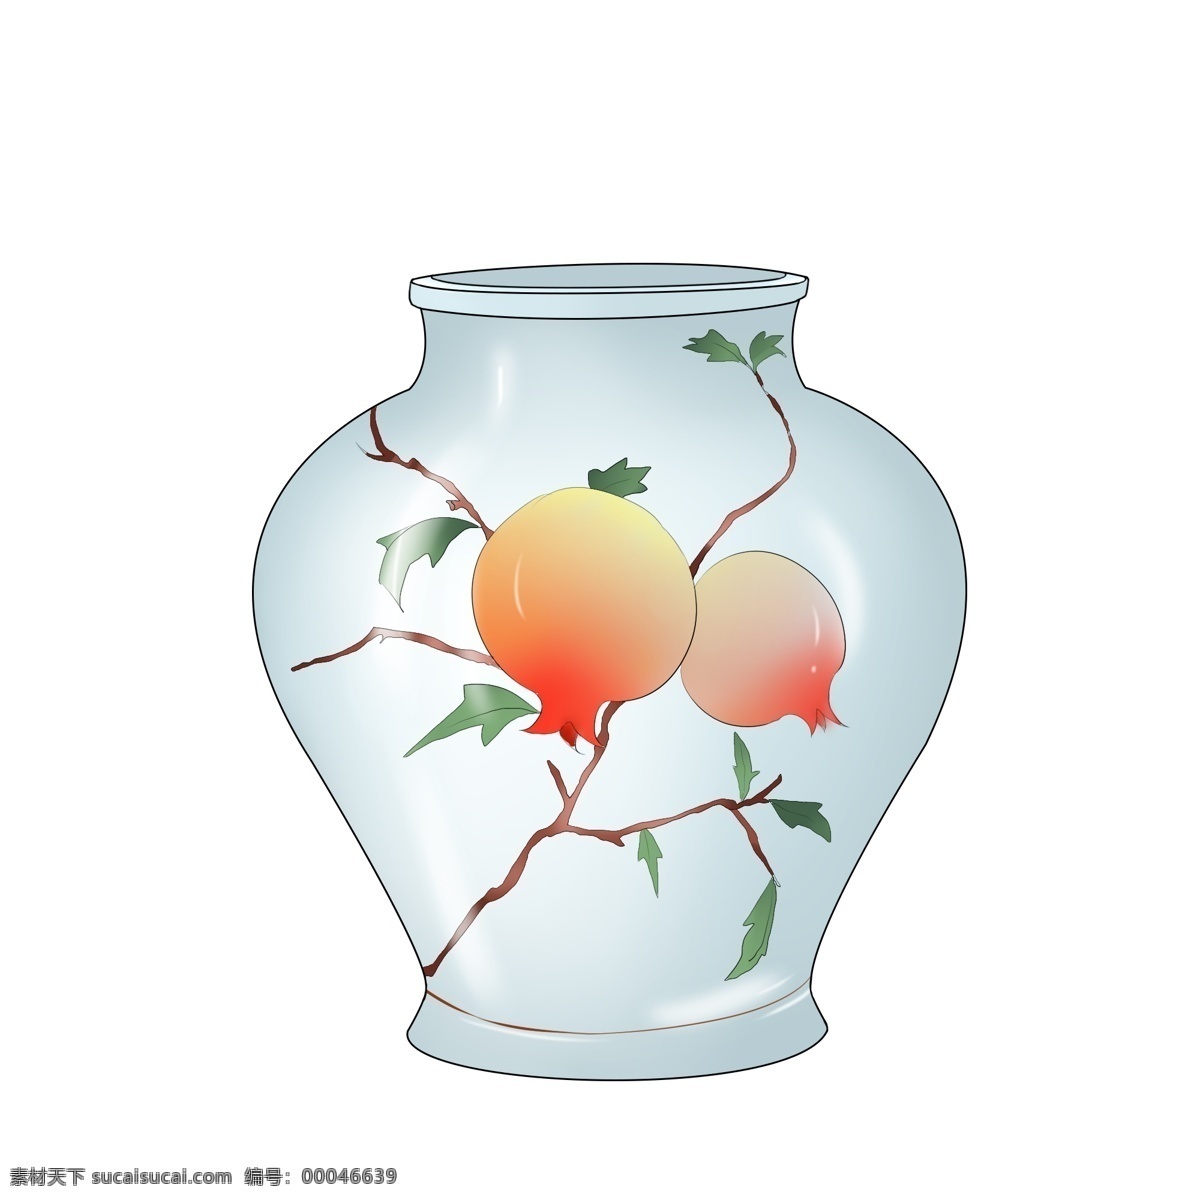 青色 石榴 瓷瓶 插画 红色的石榴 绿色的叶子 漂亮 手绘石榴瓷瓶 石榴瓷瓶装饰